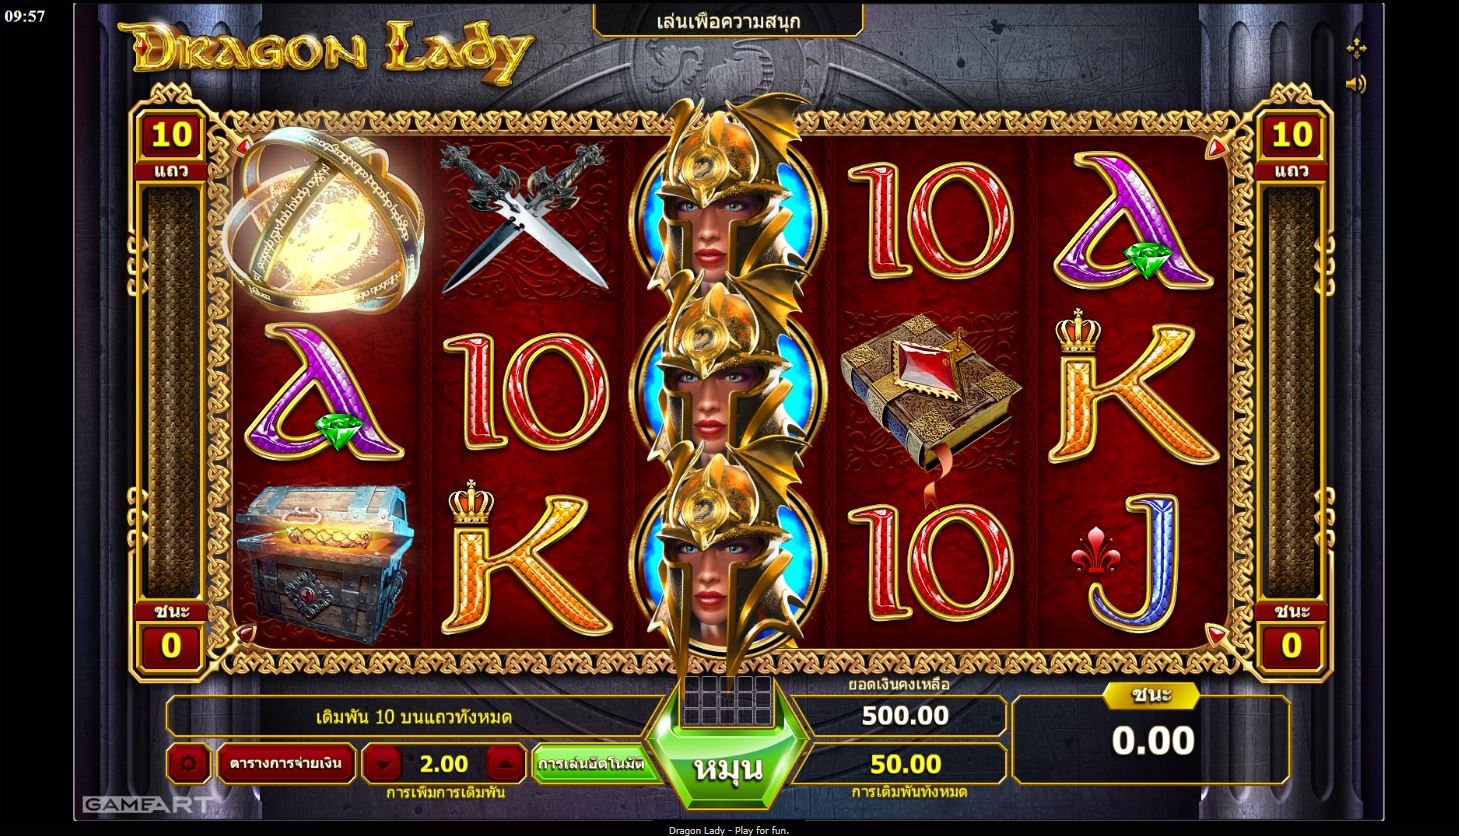 เล่น 5 เกมสล็อต ออนไลน์ ได้เงินจริง แนวผู้หญิง และรับเงินก้อนโตจริงที่ Live Casino House